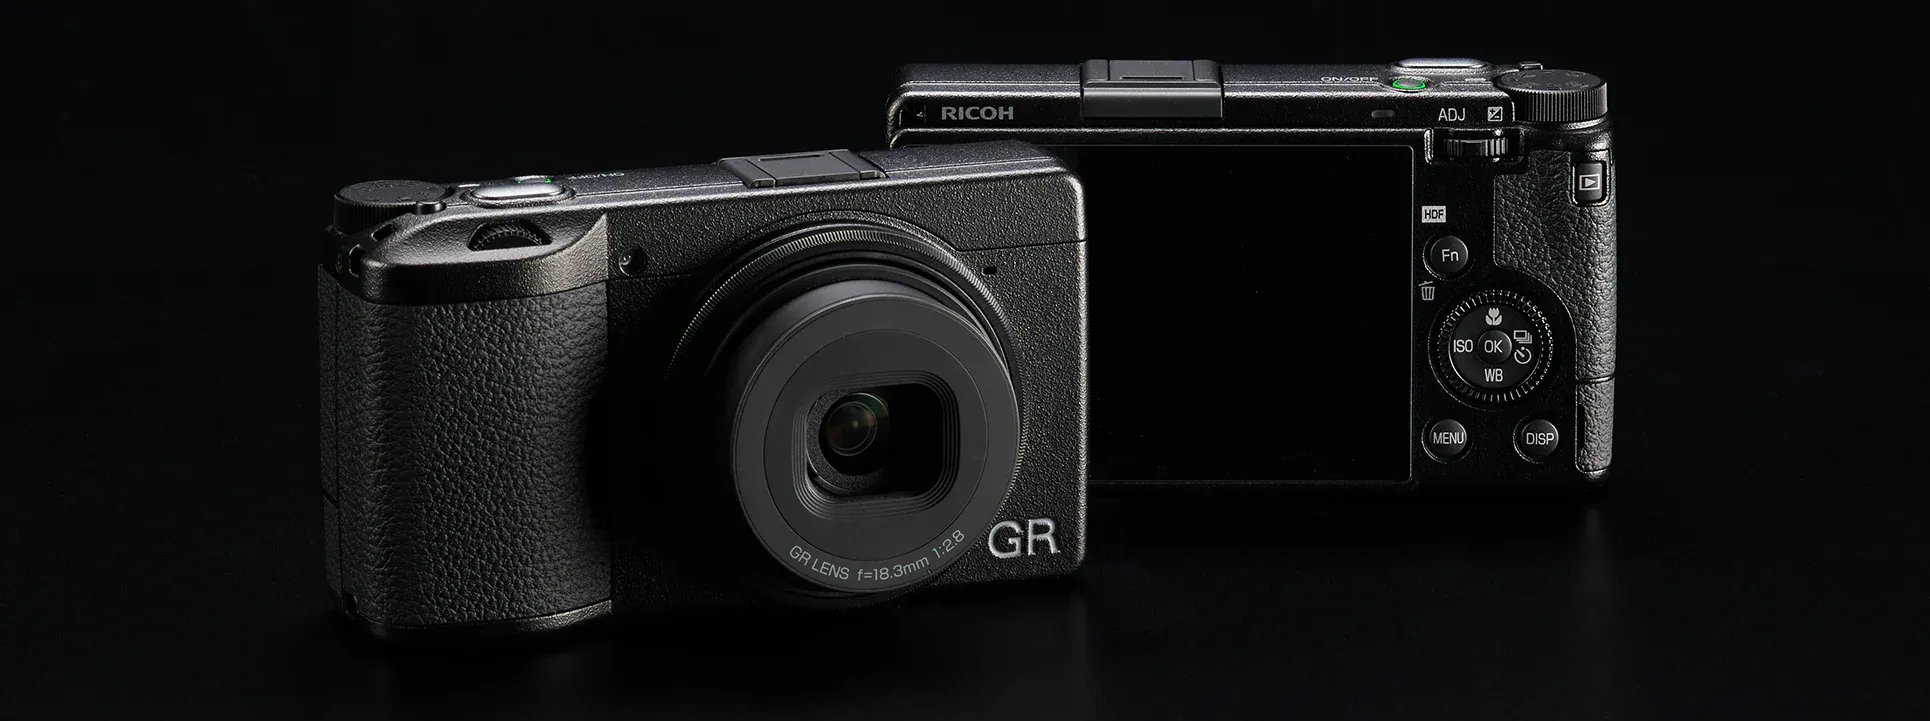 Máy ảnh compact Ricoh GR IIIx HDF